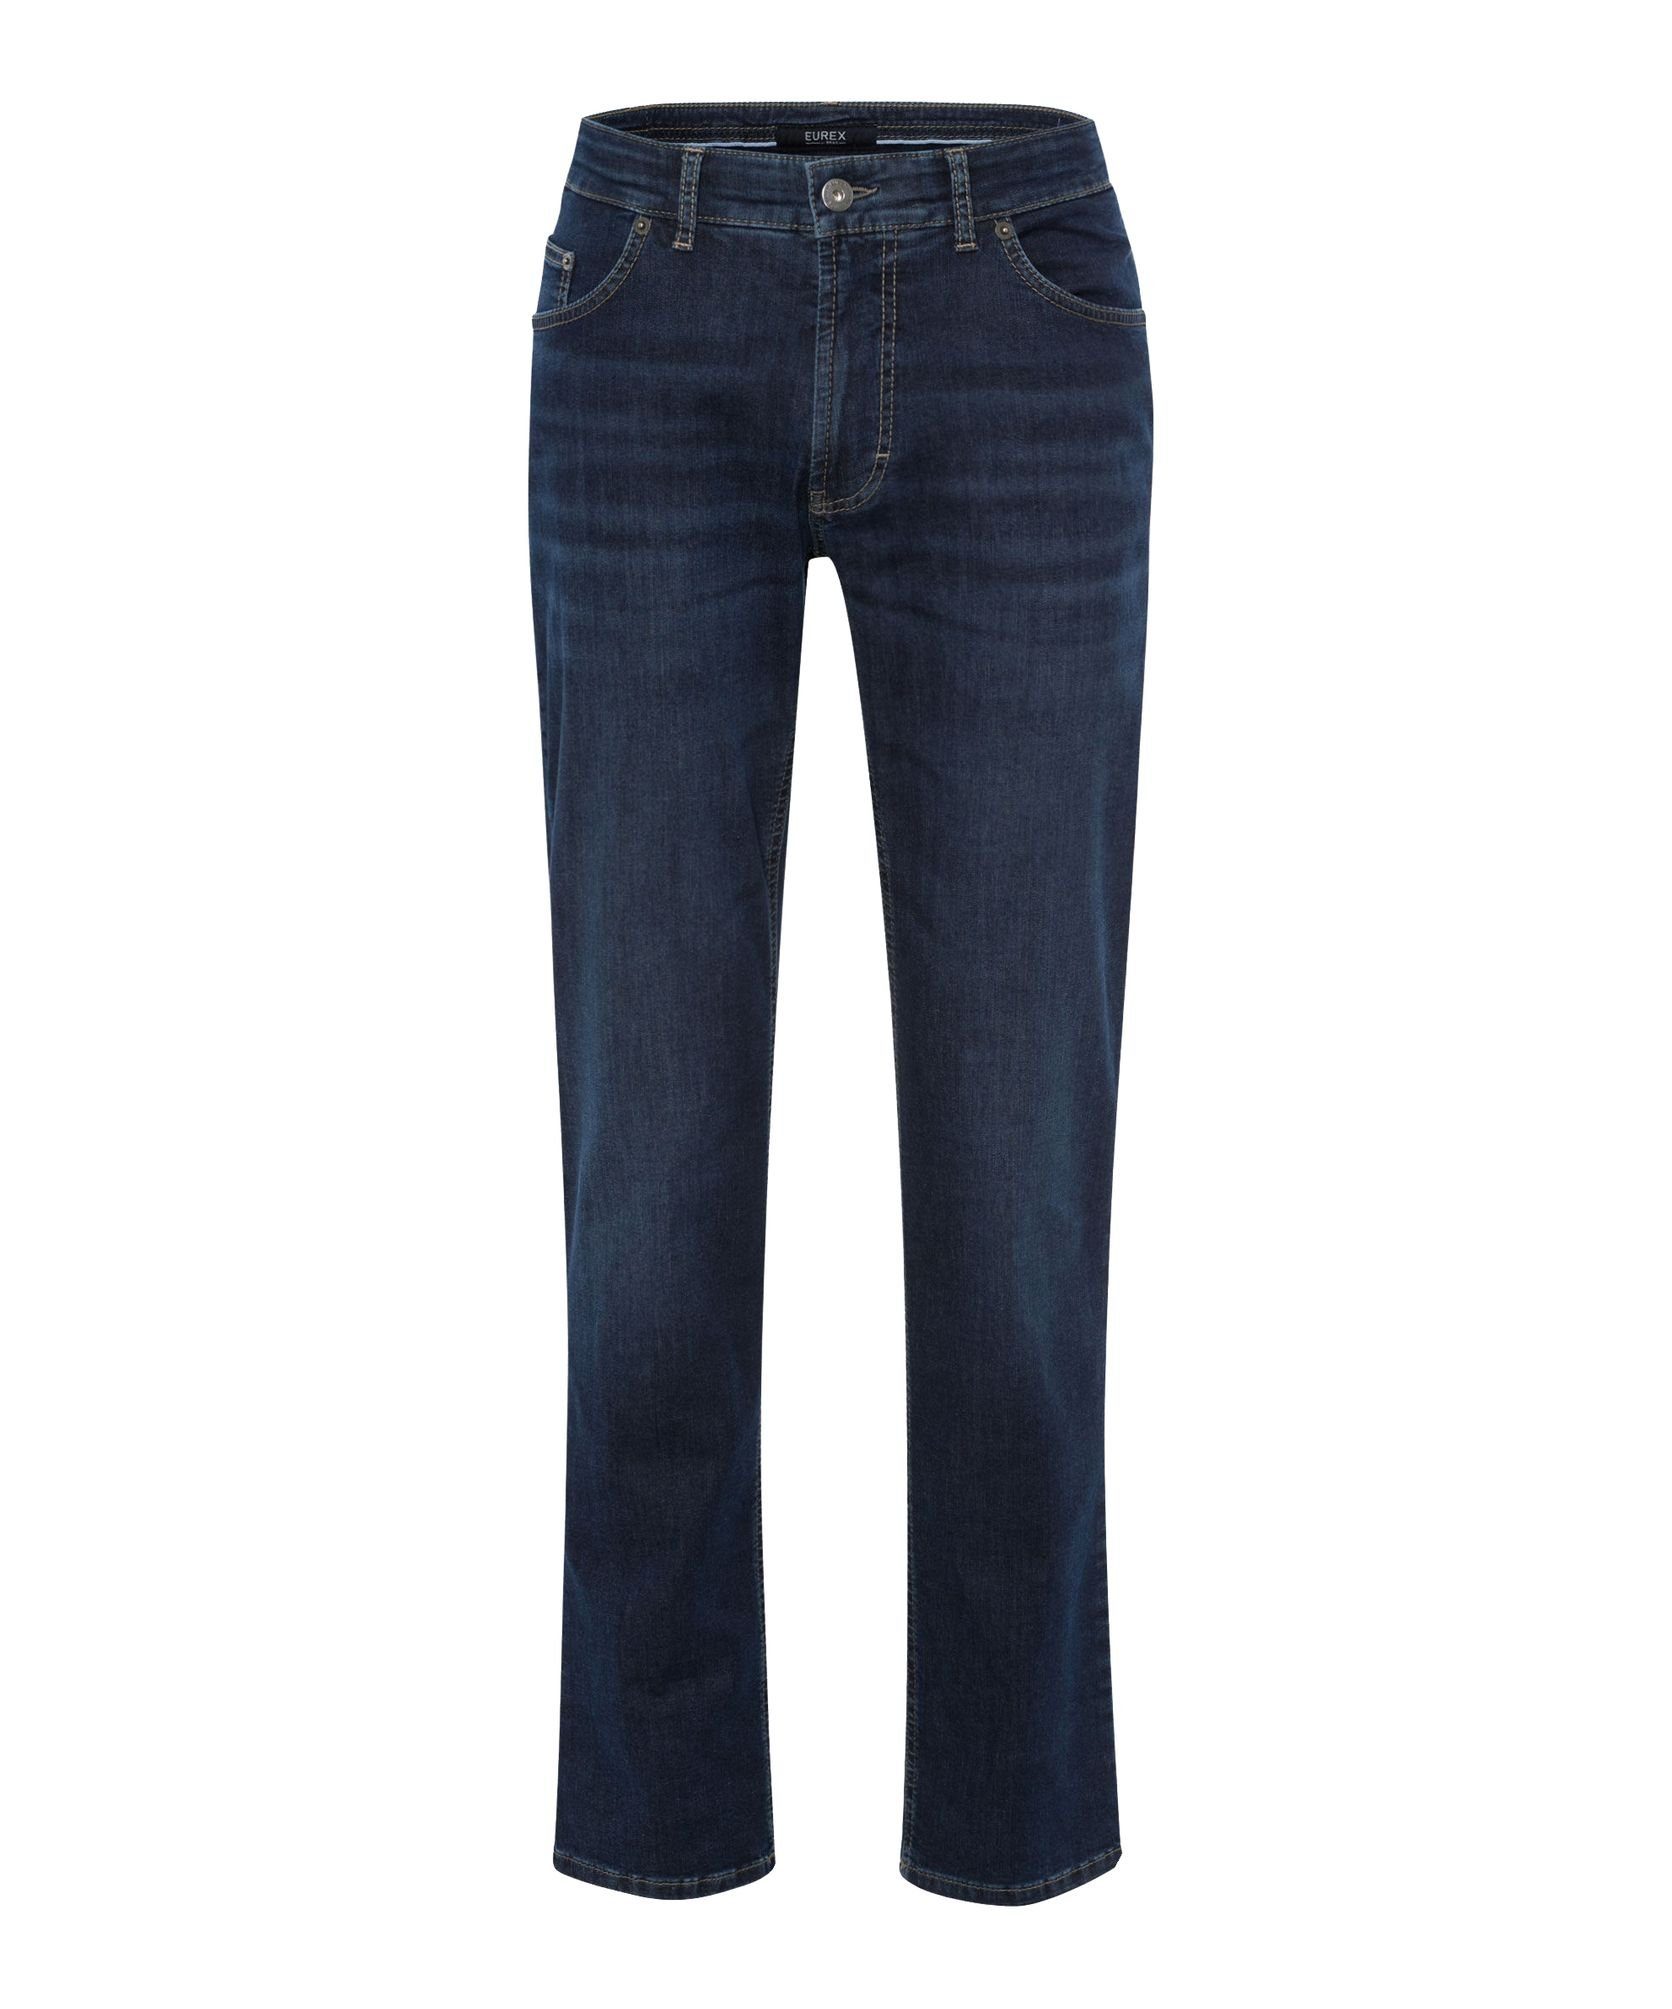 BRAX 54-6527 5-Pocket-Jeans by Blue EUREX Blue (23) Luke-S